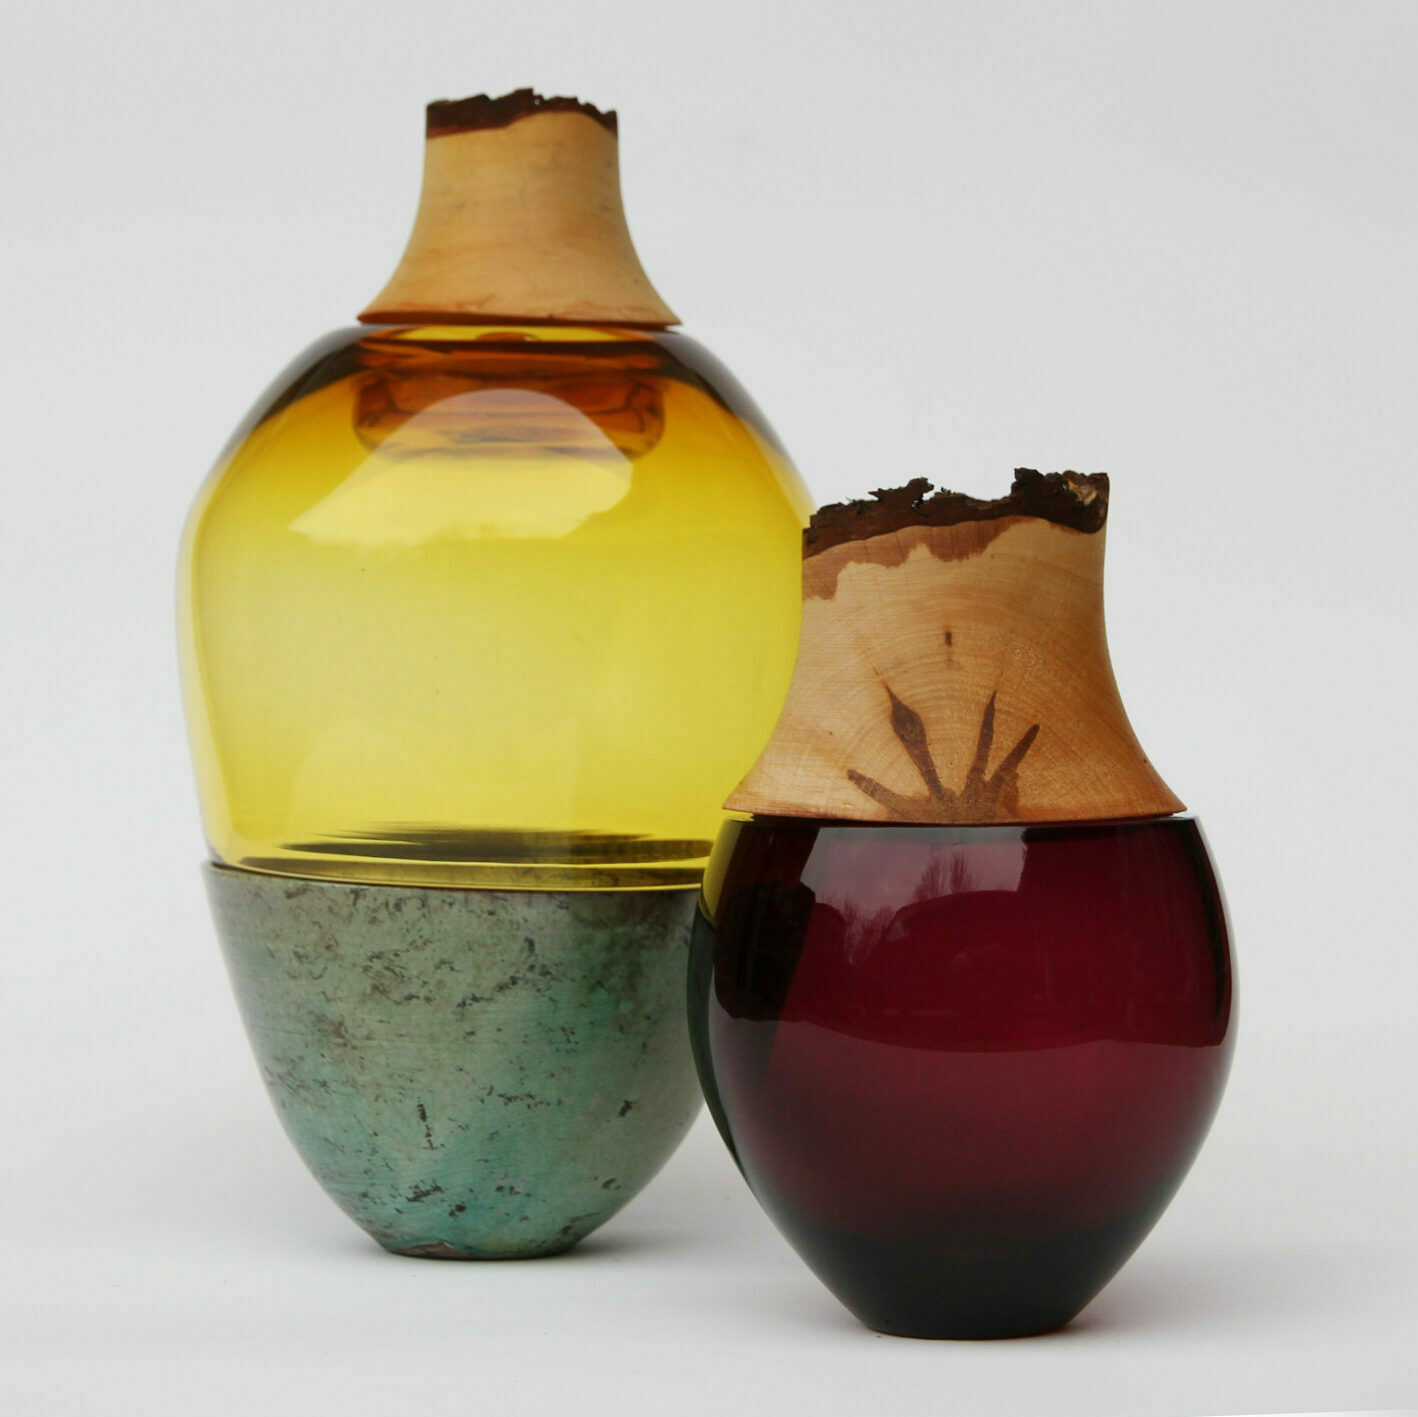 stacking vessels utopia & utility vasen funktionale skulpturen glas keramik messing kupfer holz design inneneinrichtung einrichtungsidee